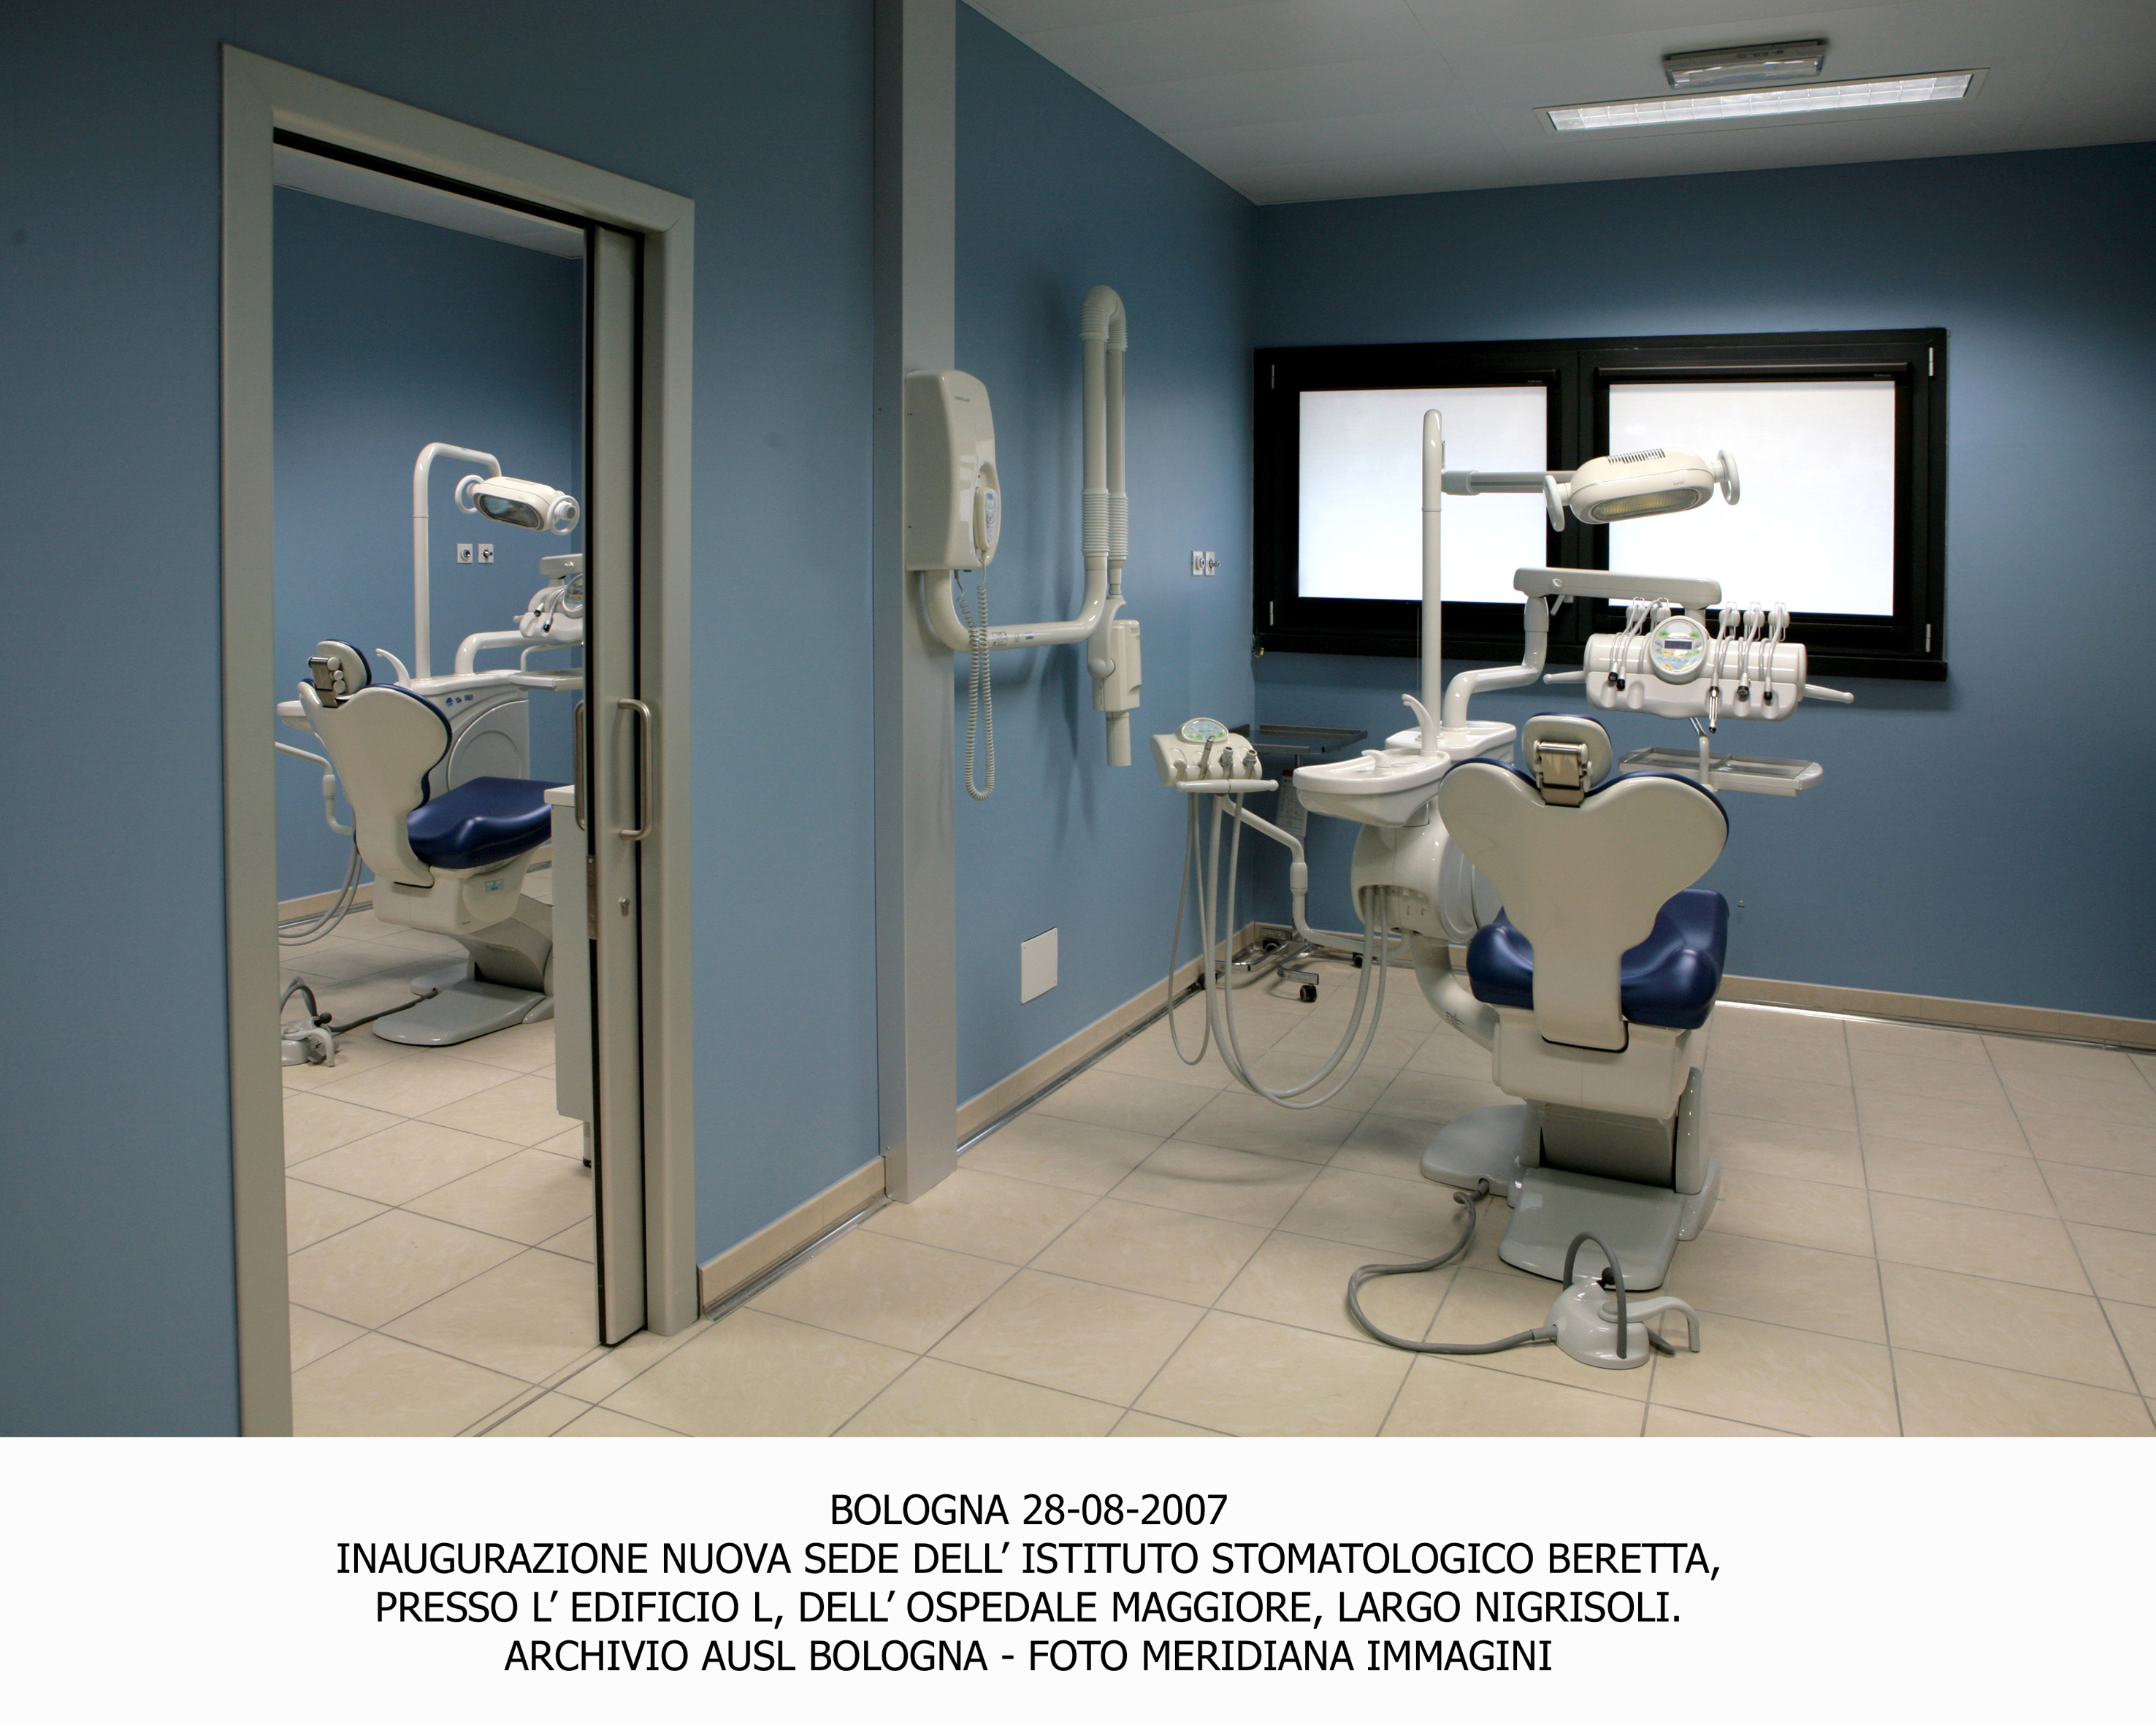 Inaugurazione nuova sede dell'Istituto Stomatologico "Beretta" - Ospedale Maggiore